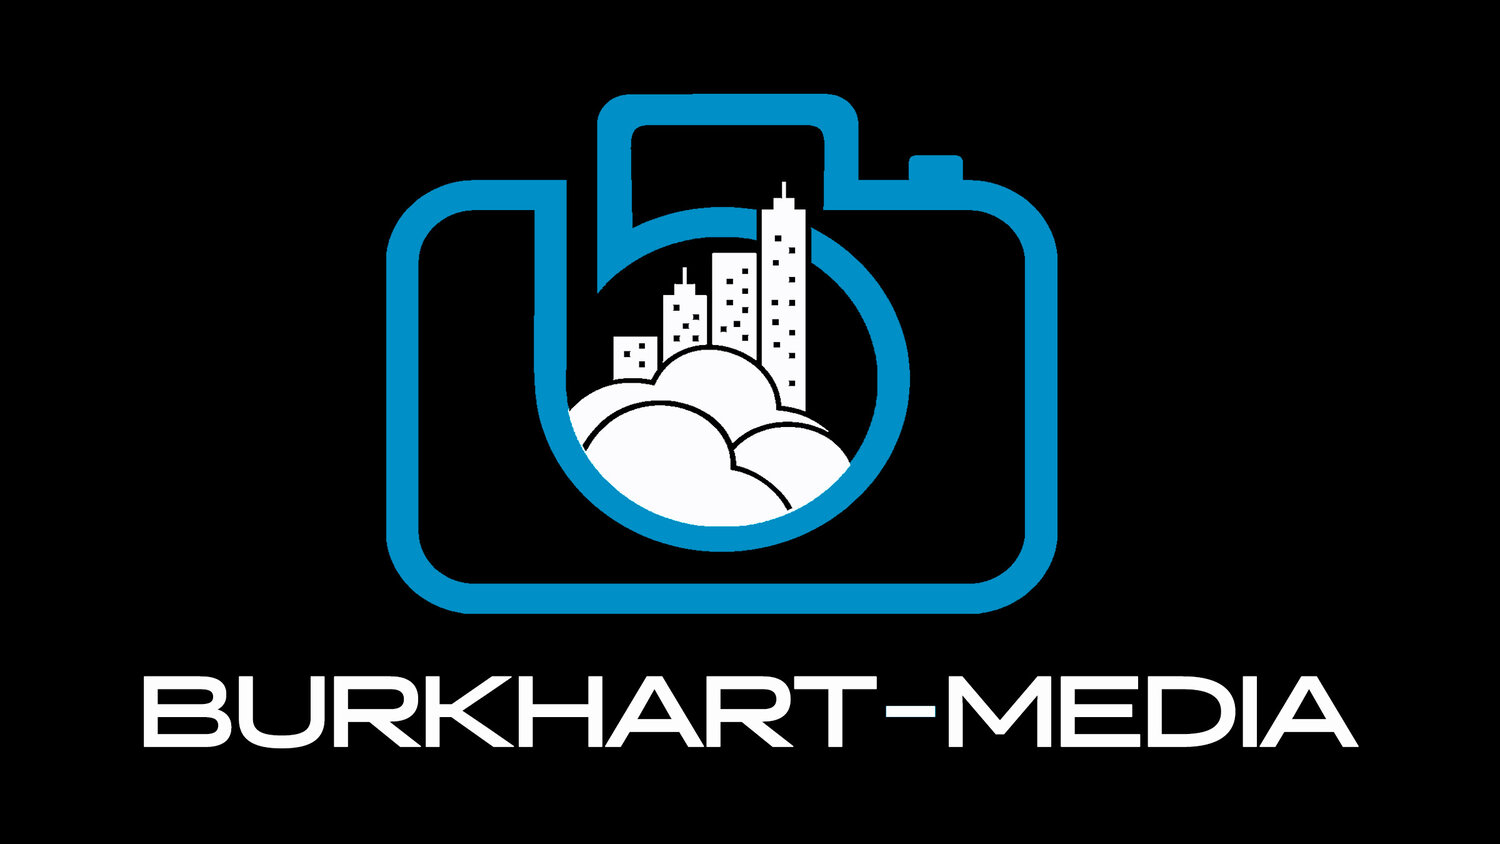 Burkhart Media